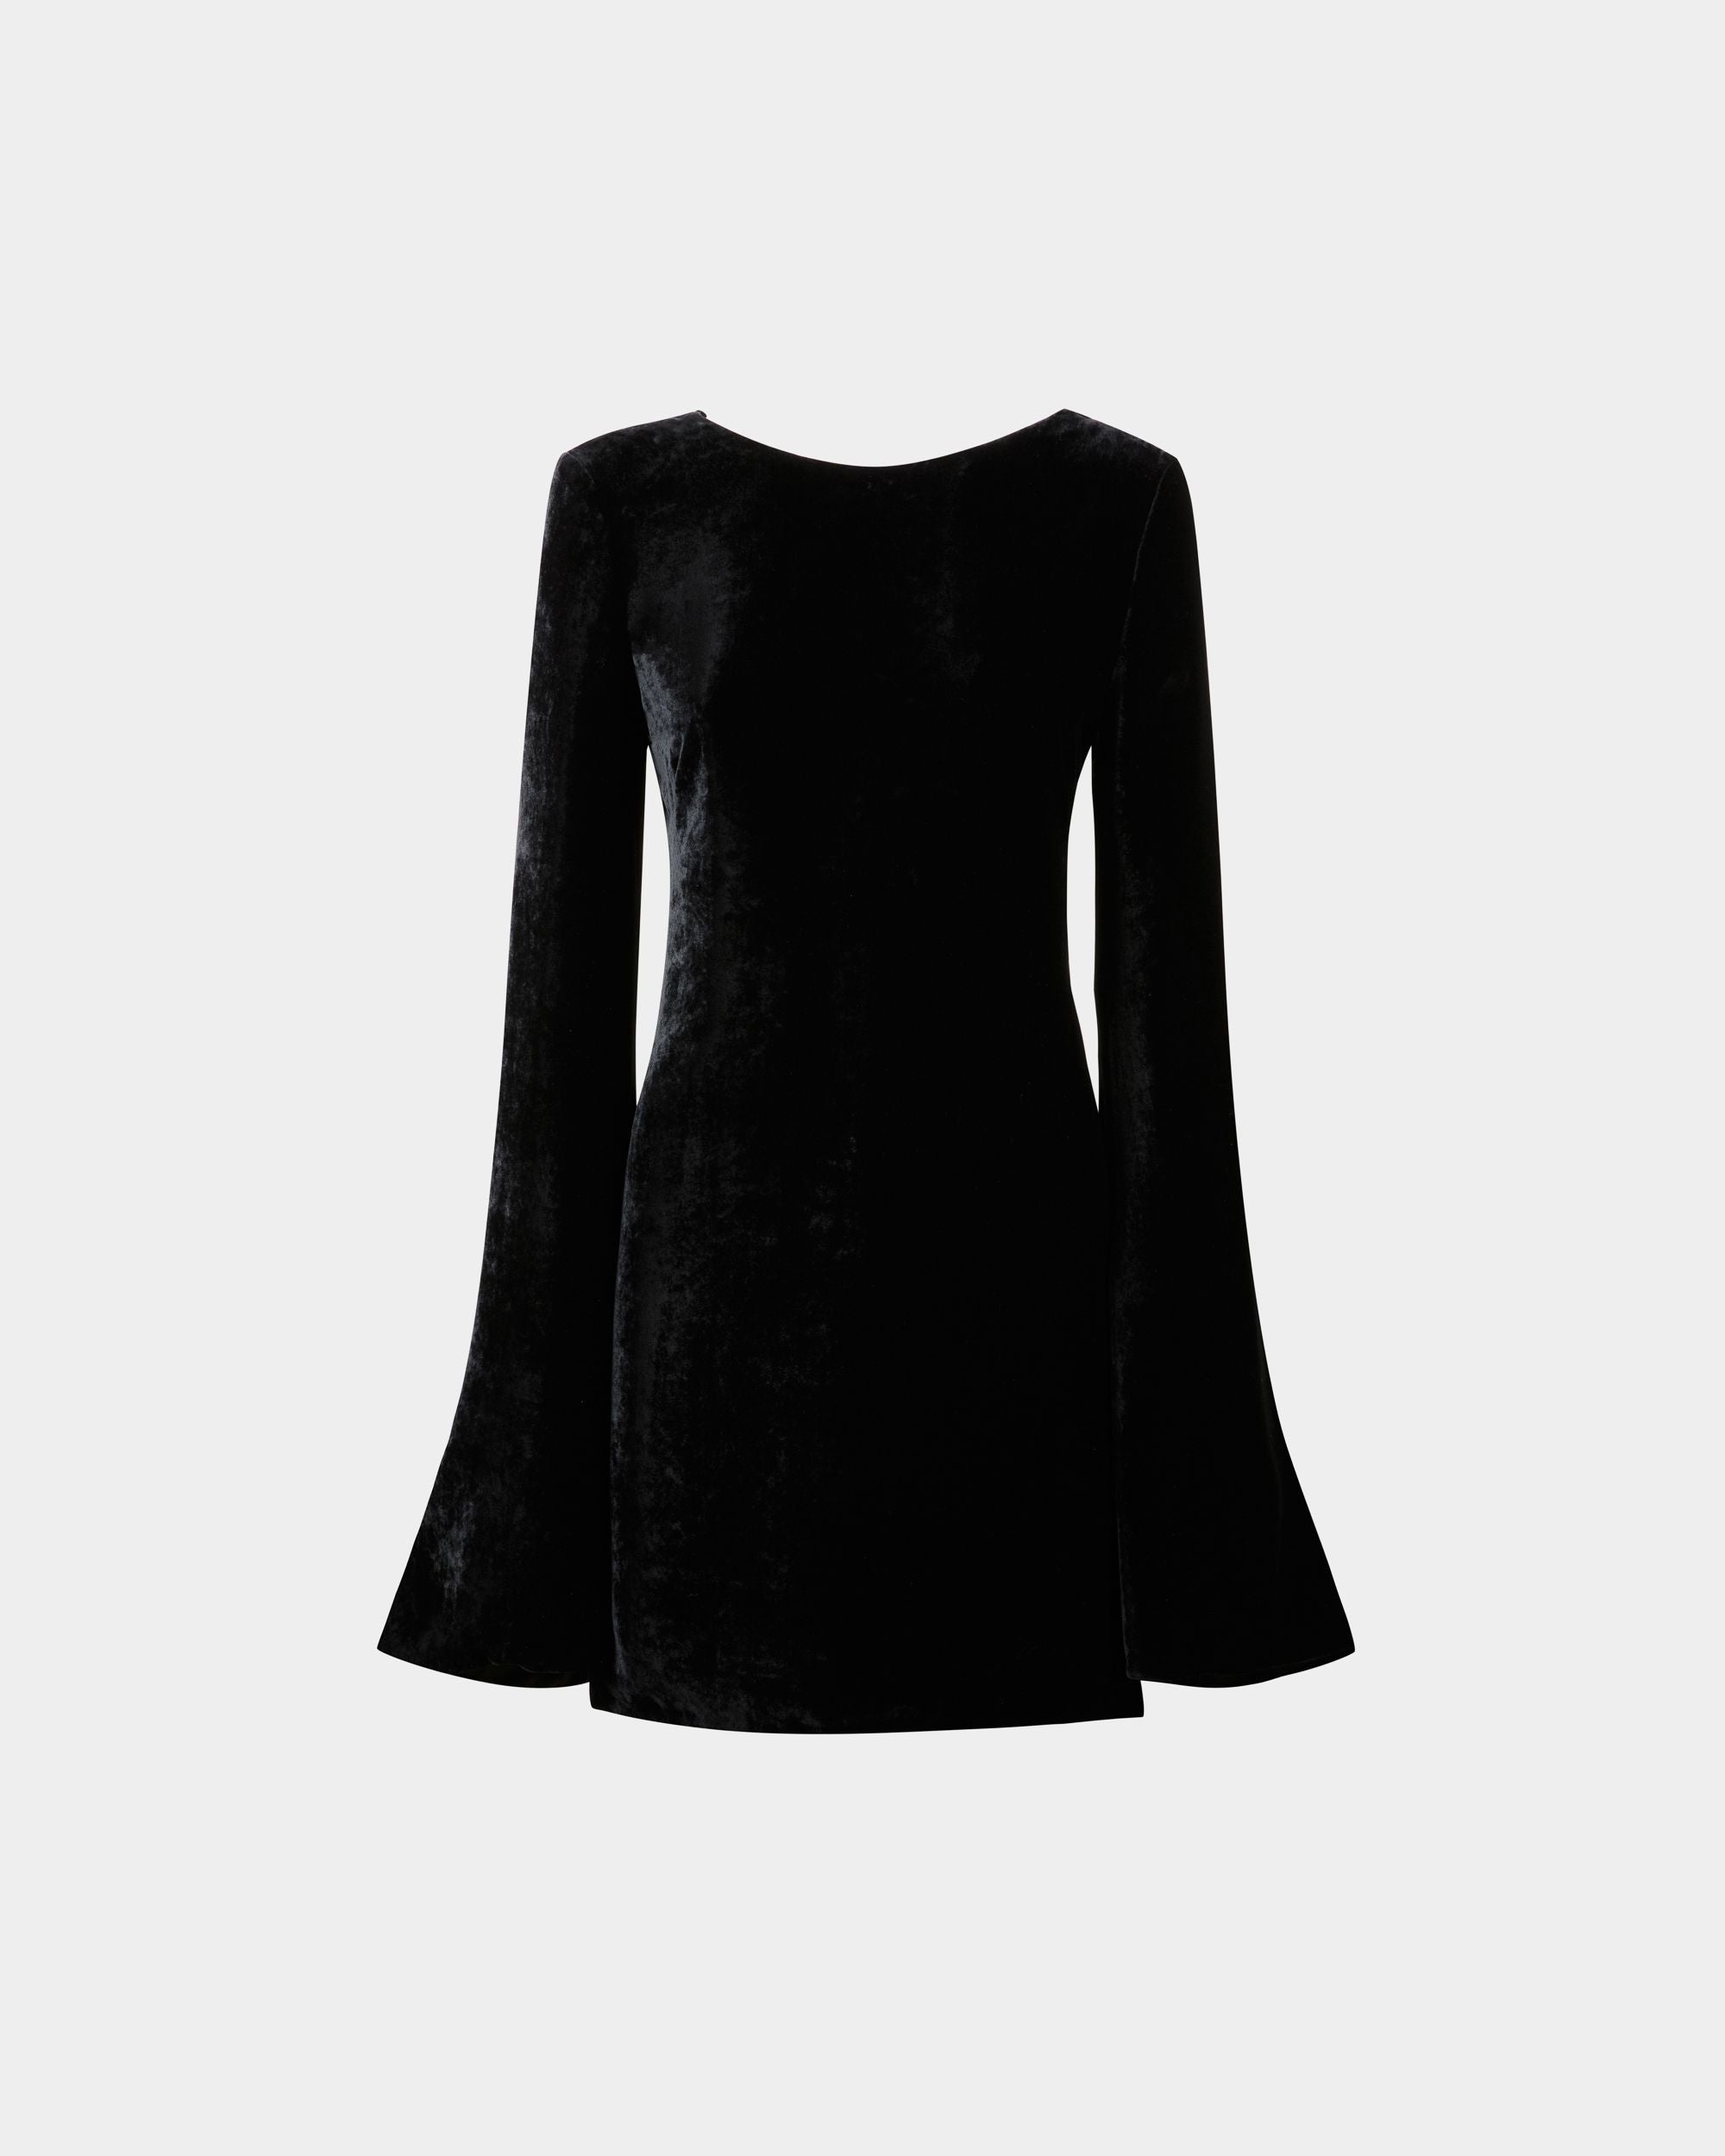 Mini abito da donna in velluto nero | Bally | Still Life Fronte